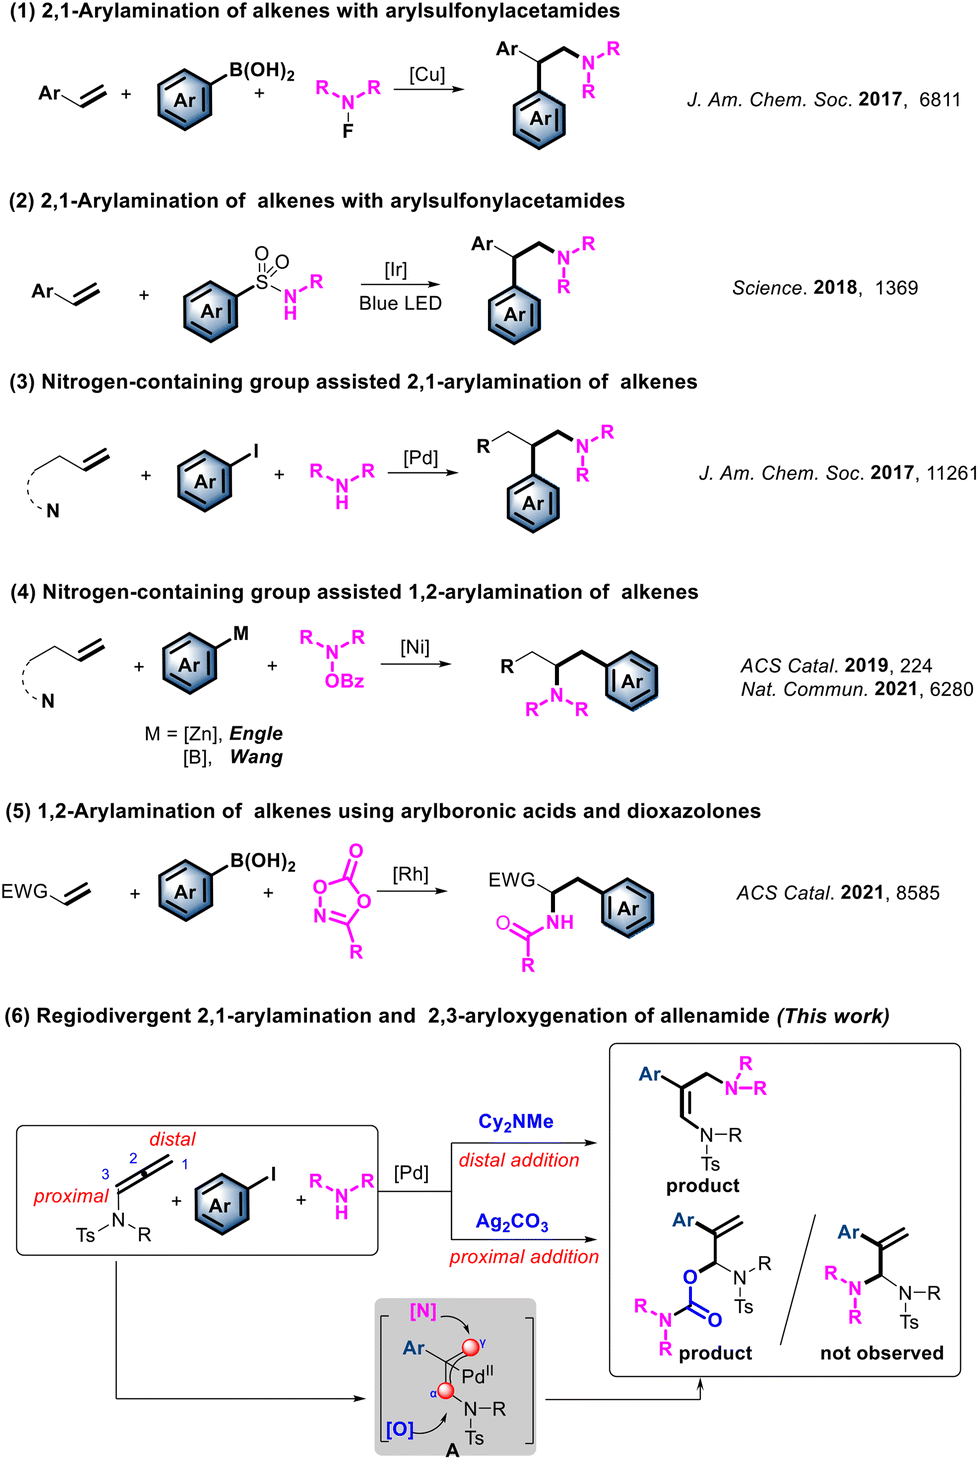 Palladium-catalyzed regiodivergent arylamination/aryloxygenation 